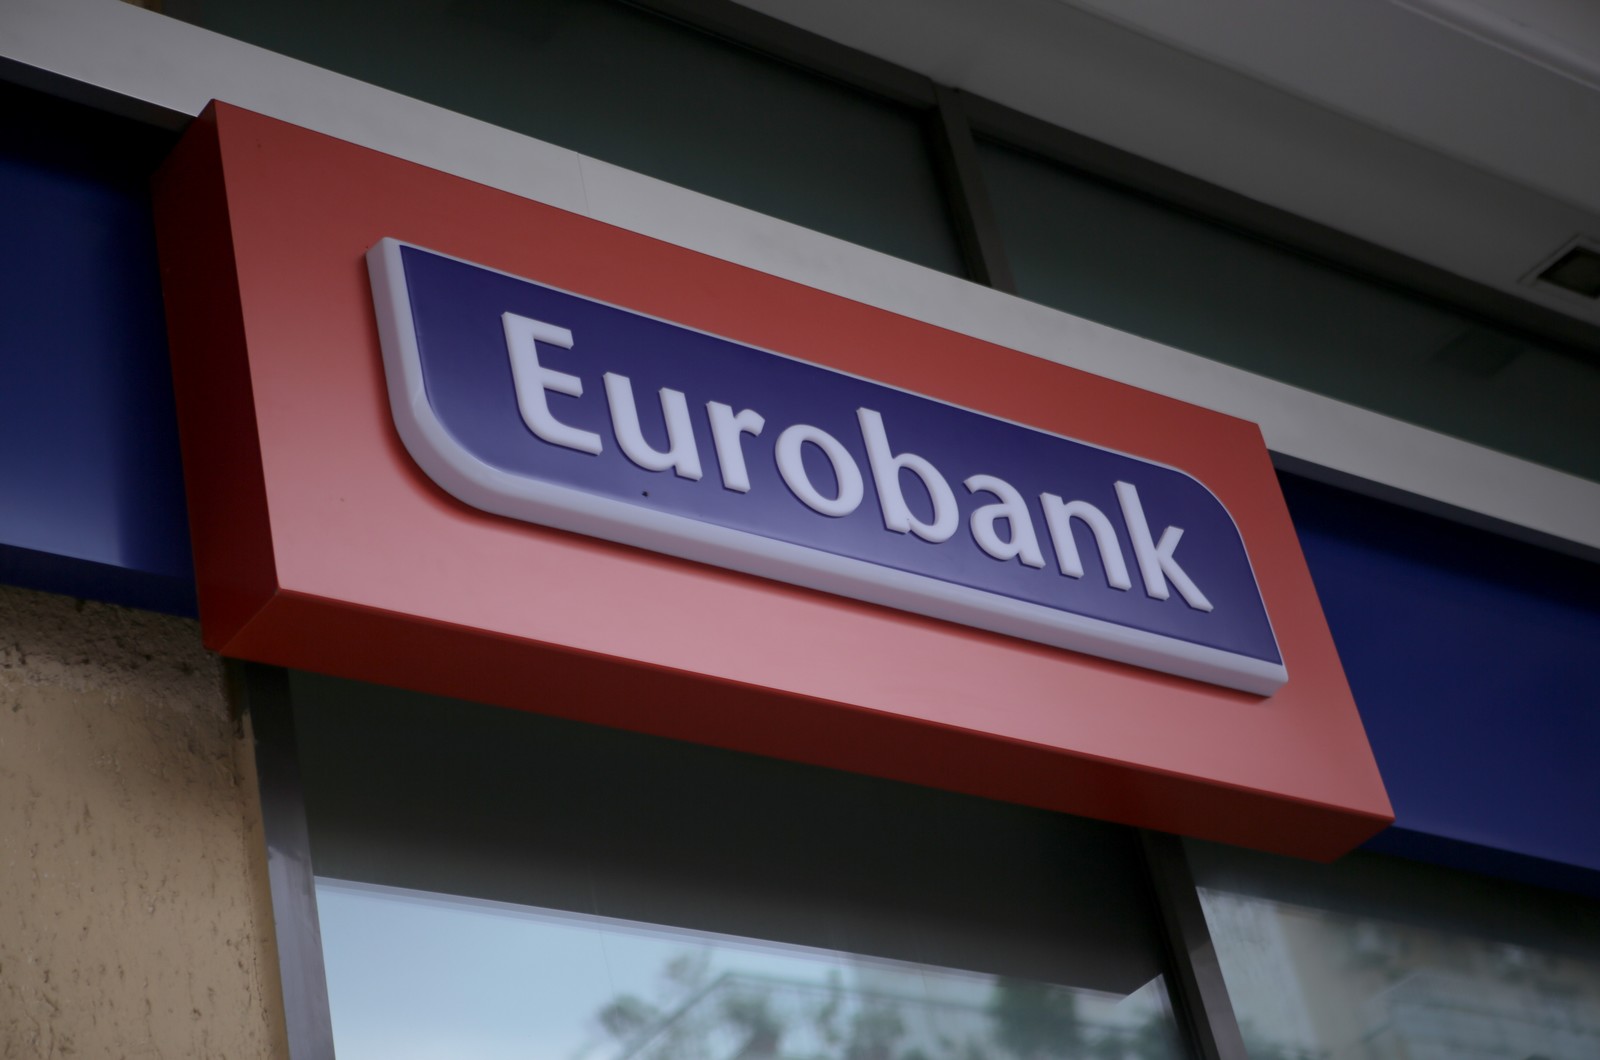 Τράπεζα Eurobank